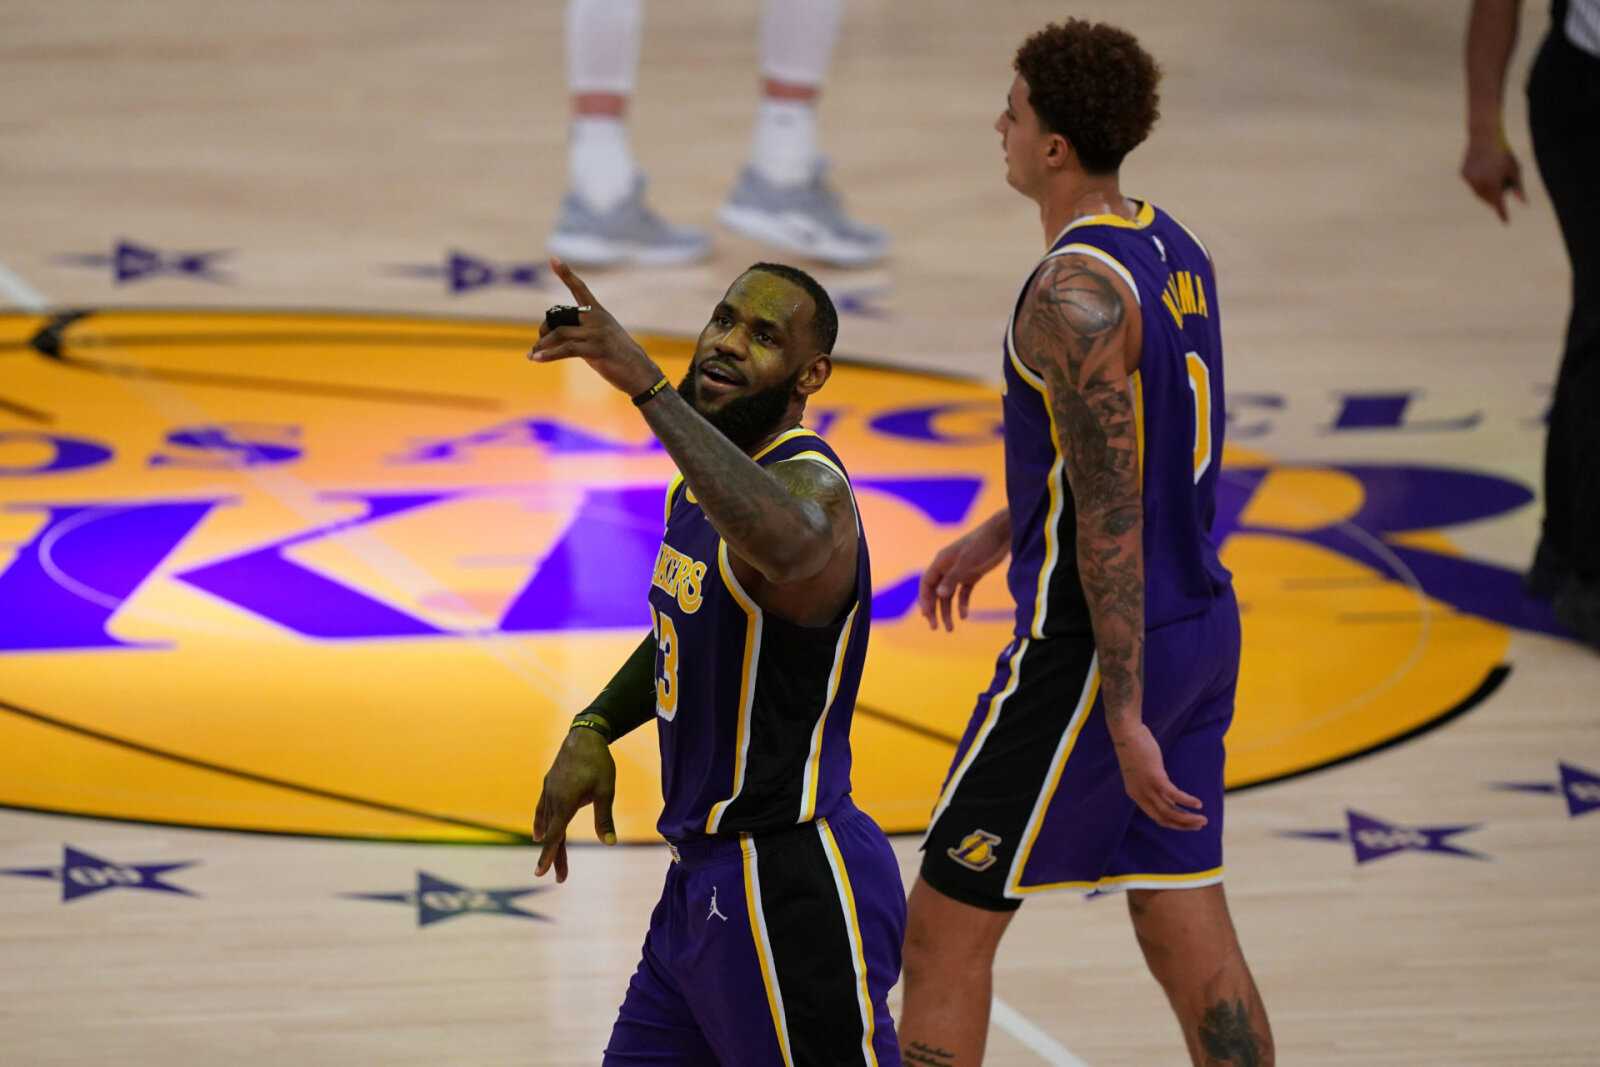 "Meilleure équipe de la NBA": Twitter réagit à la première victoire de LeBron James et des Lakers après une bataille rapprochée contre les Grizzlies